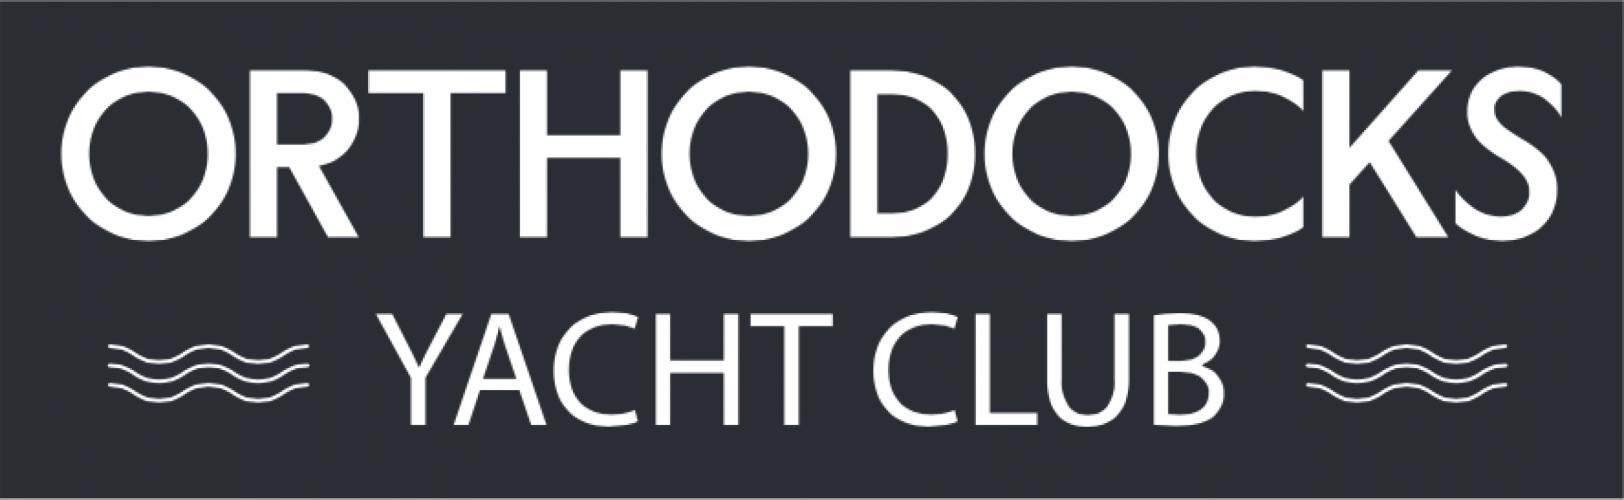 Orthodocks Yacht Club o.s.